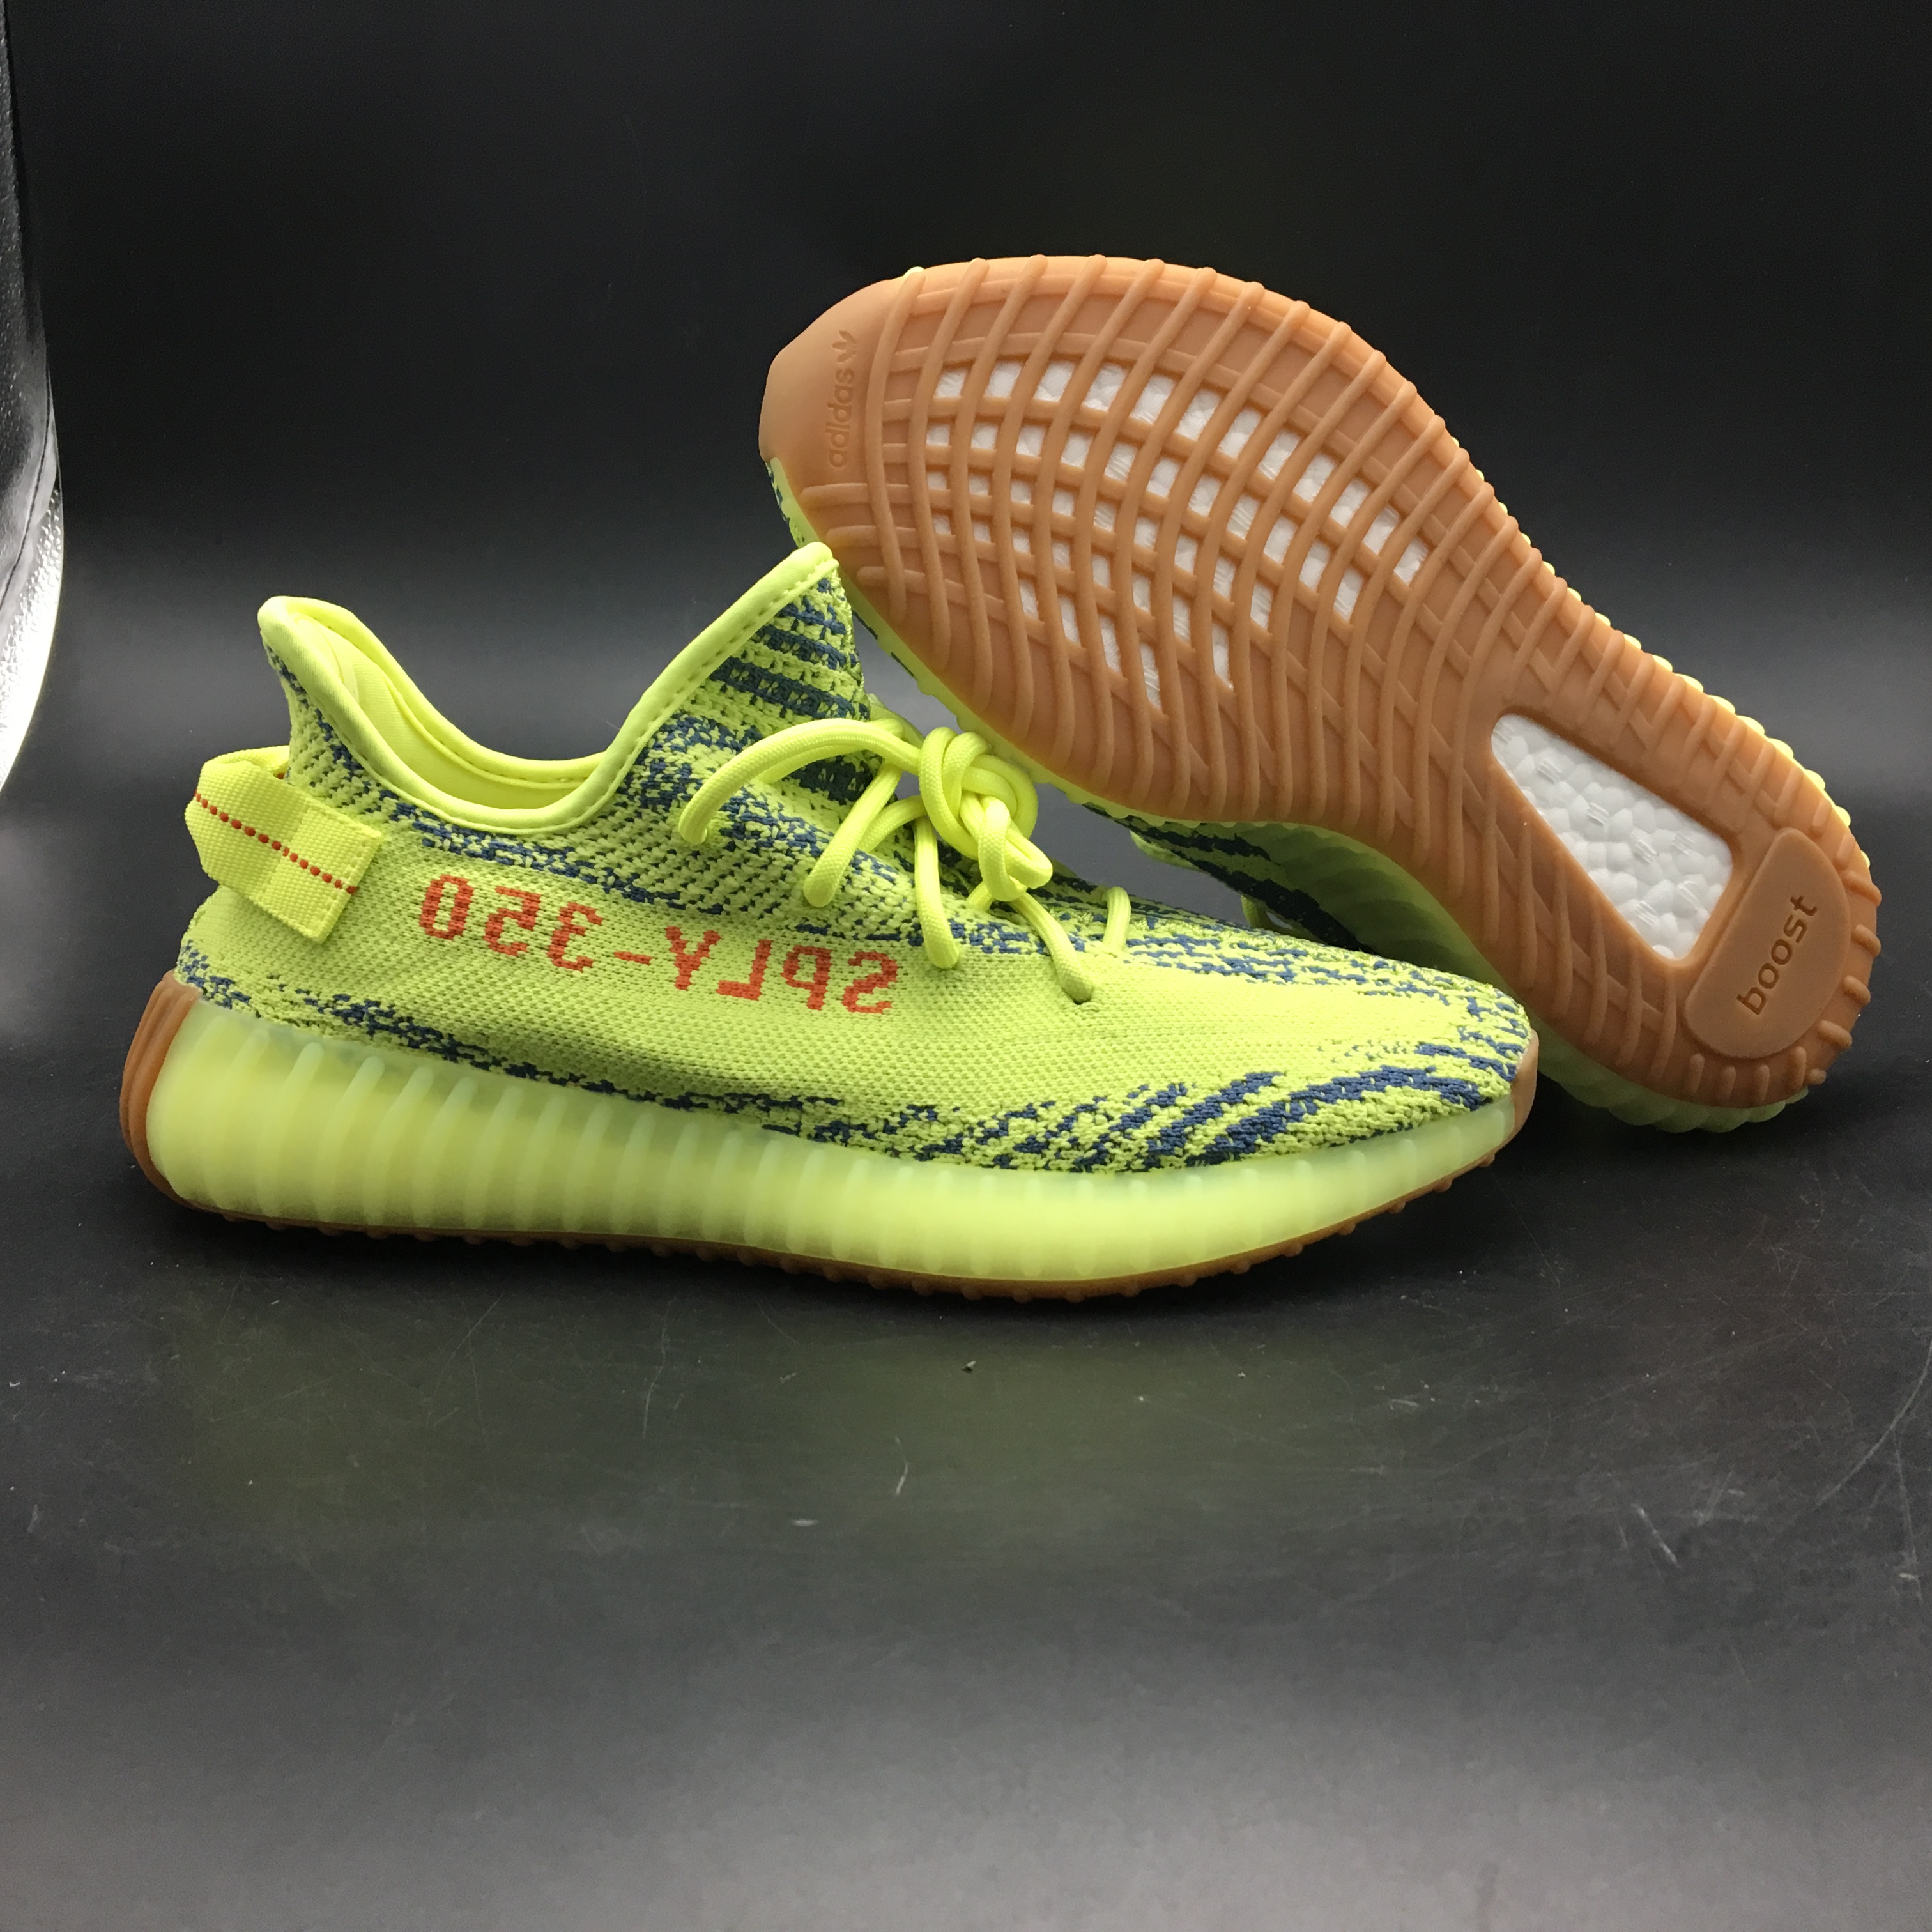 Adidas Originals Yeezy Boost 350 V2 Yebra B37572 7 - kickbulk.co